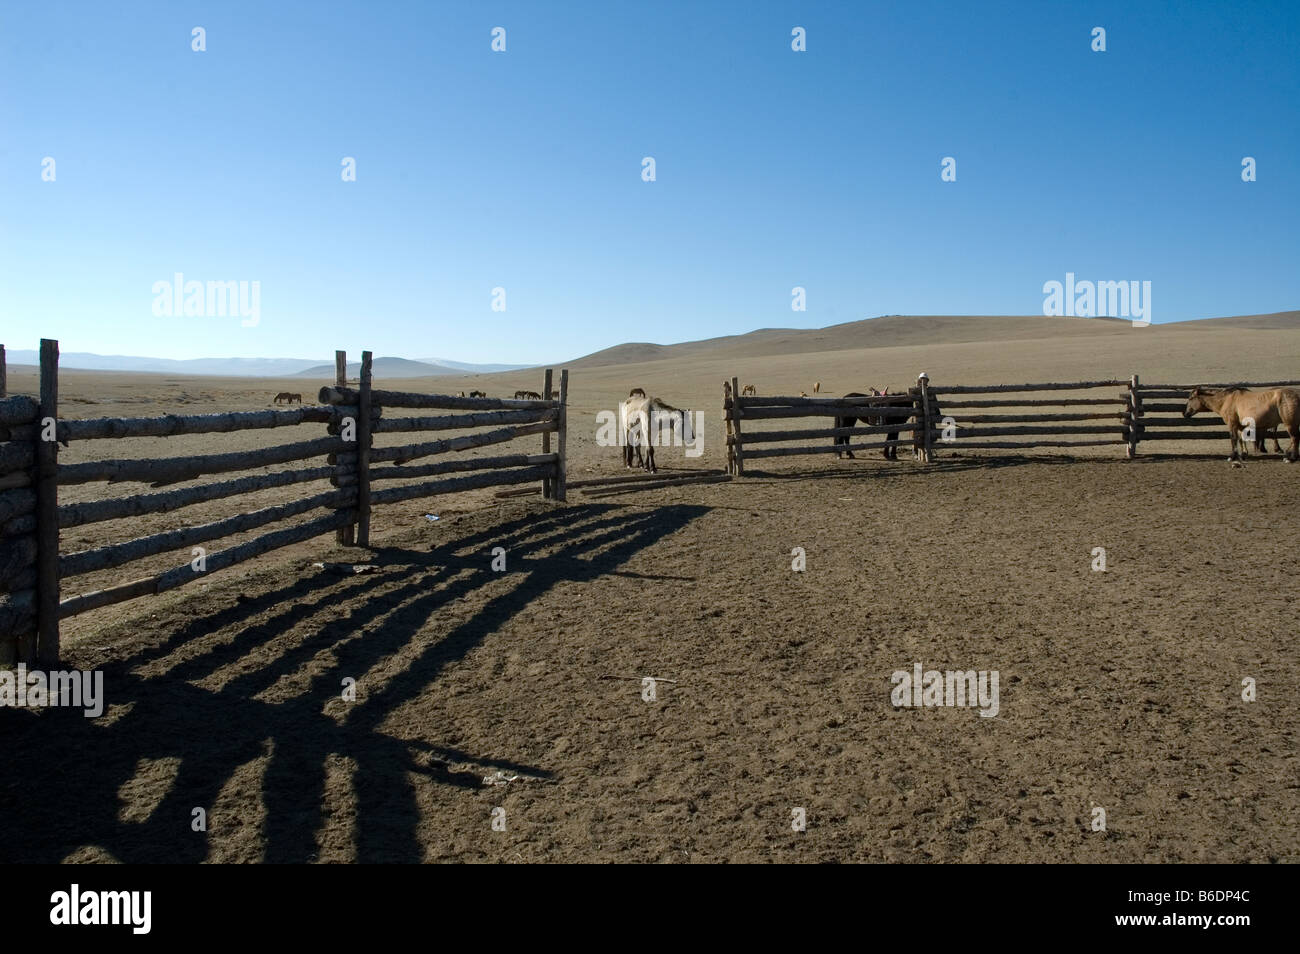 La Mongolia. La vita nelle steppe. Corral per trek cavalli. 2007 Foto Stock